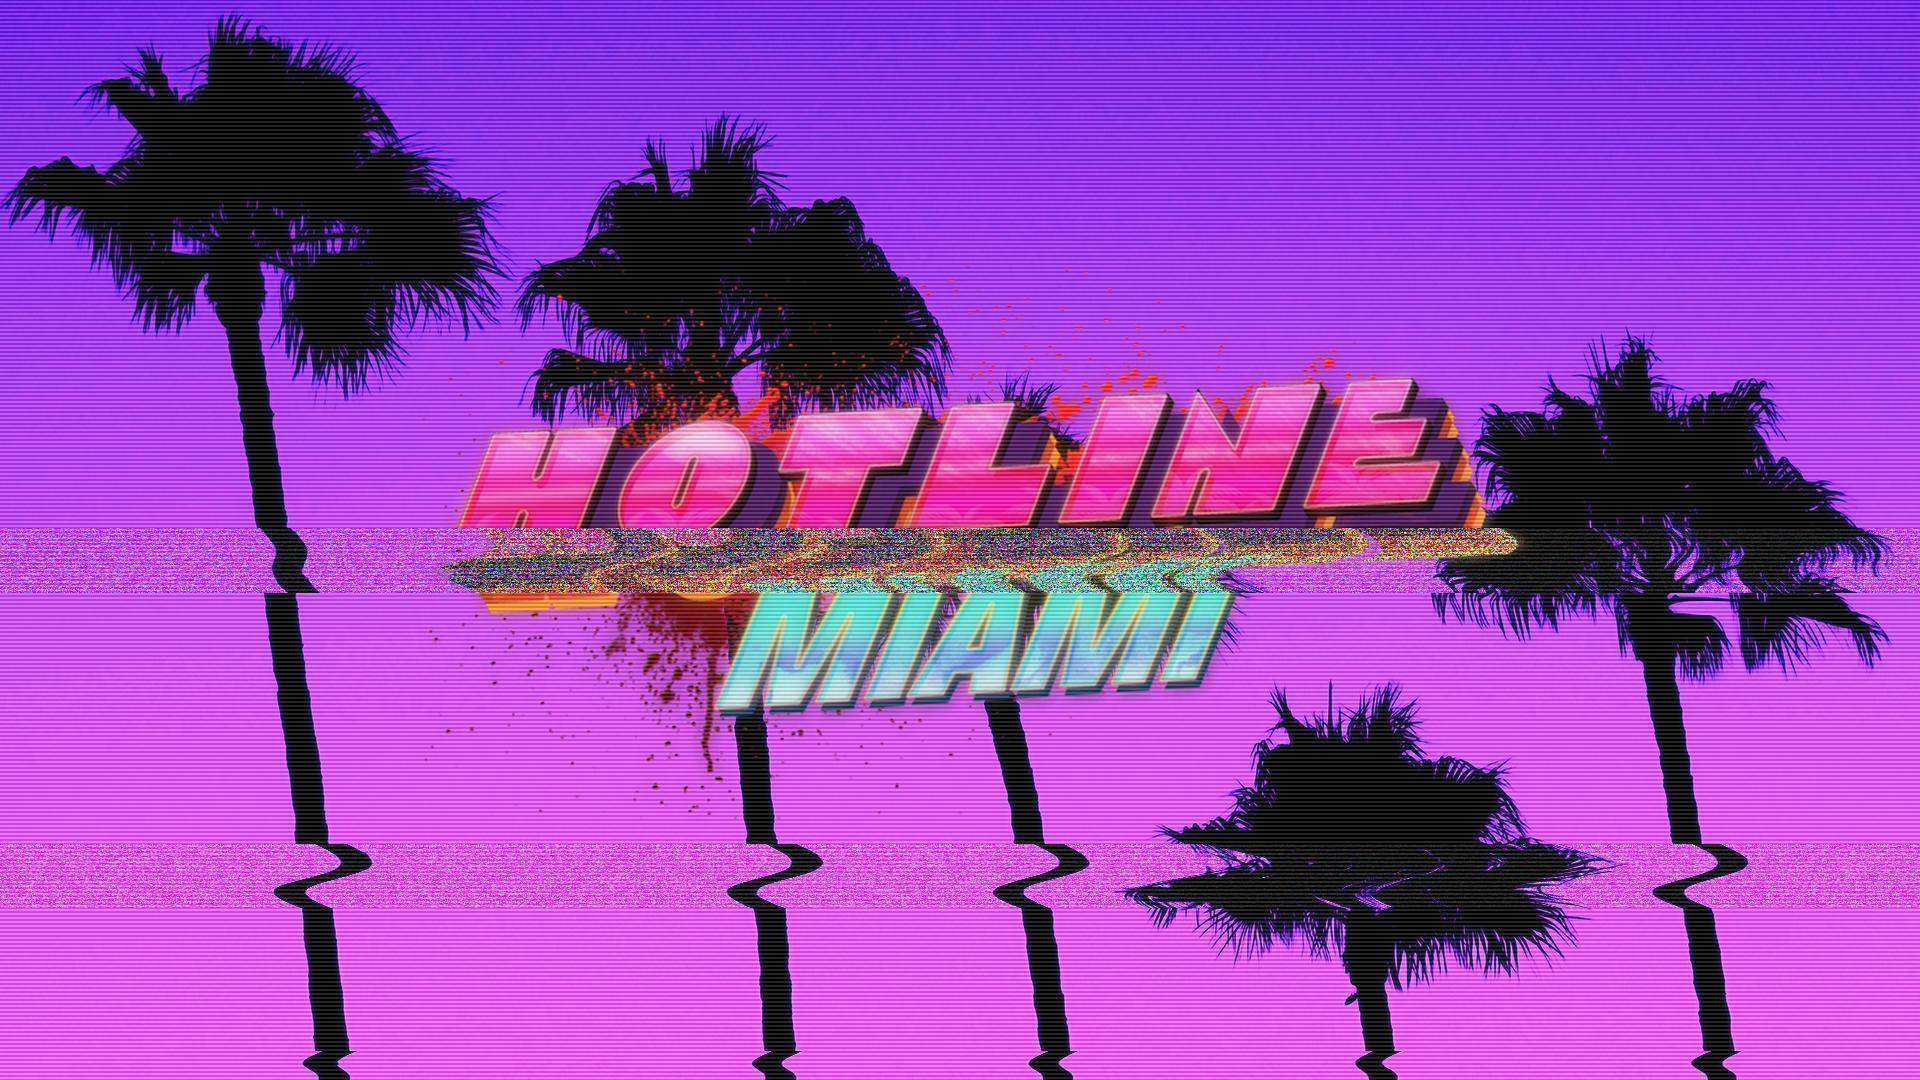 Hotline Miami Wallpaper